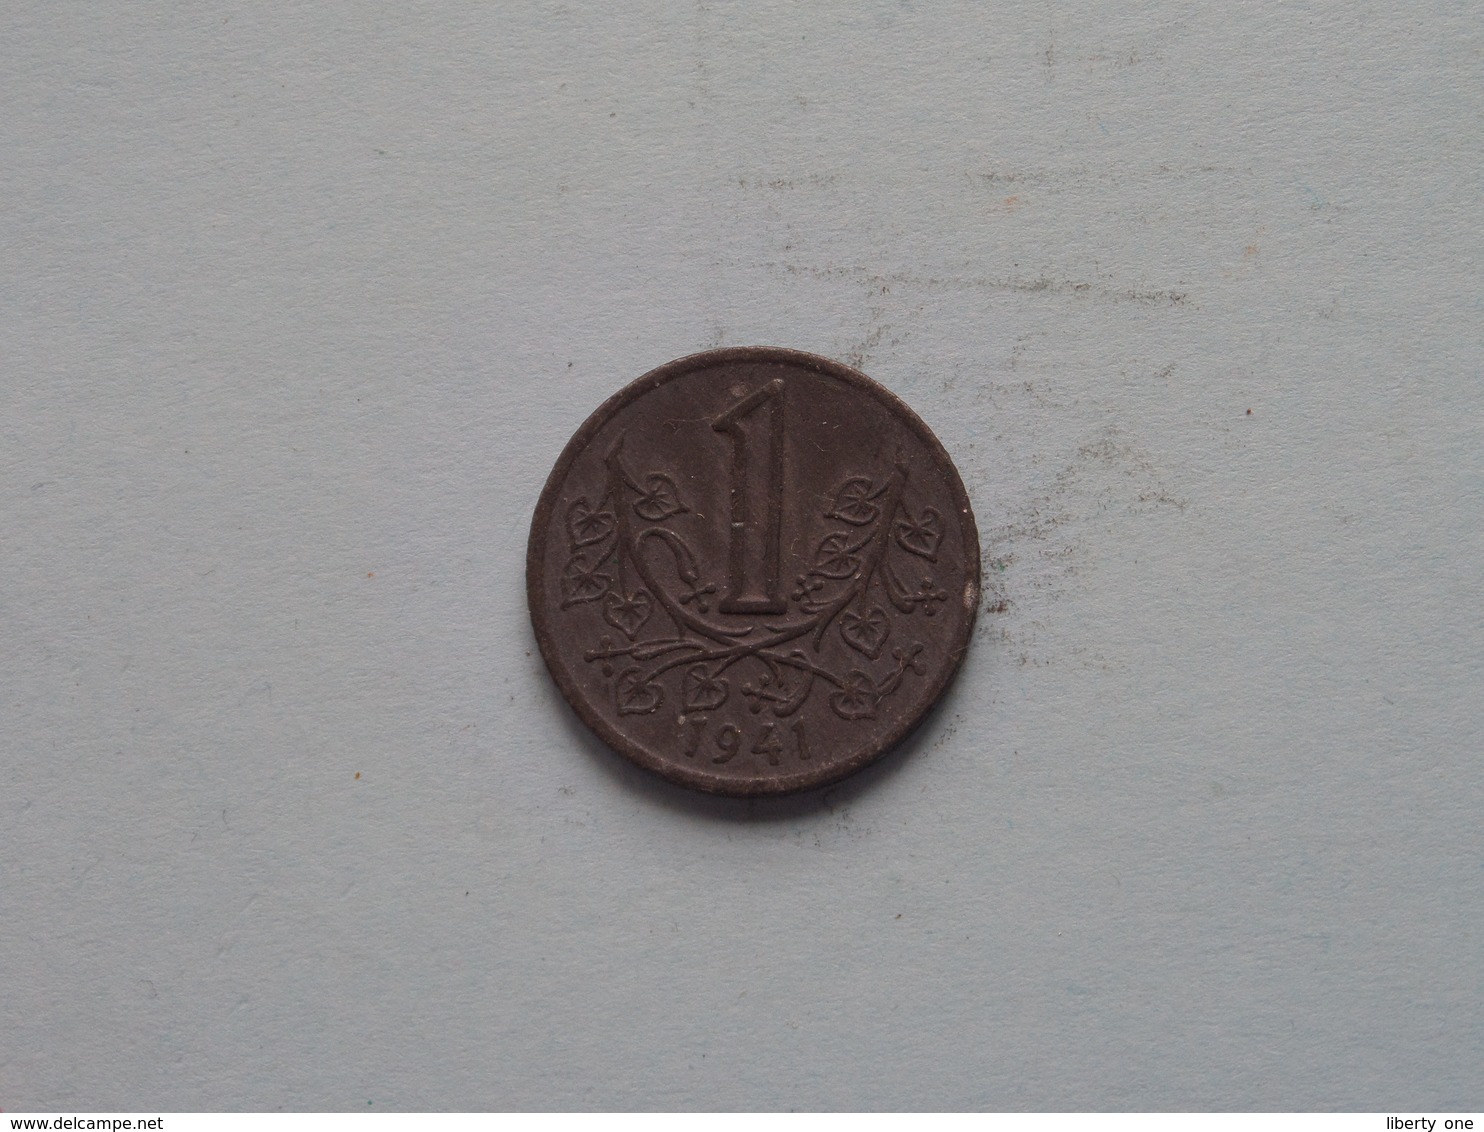 Böhmen Und Mähren 1941 - Koruna / KM 4 ( Uncleaned Coin / For Grade, Please See Photo ) !! - Tchéquie